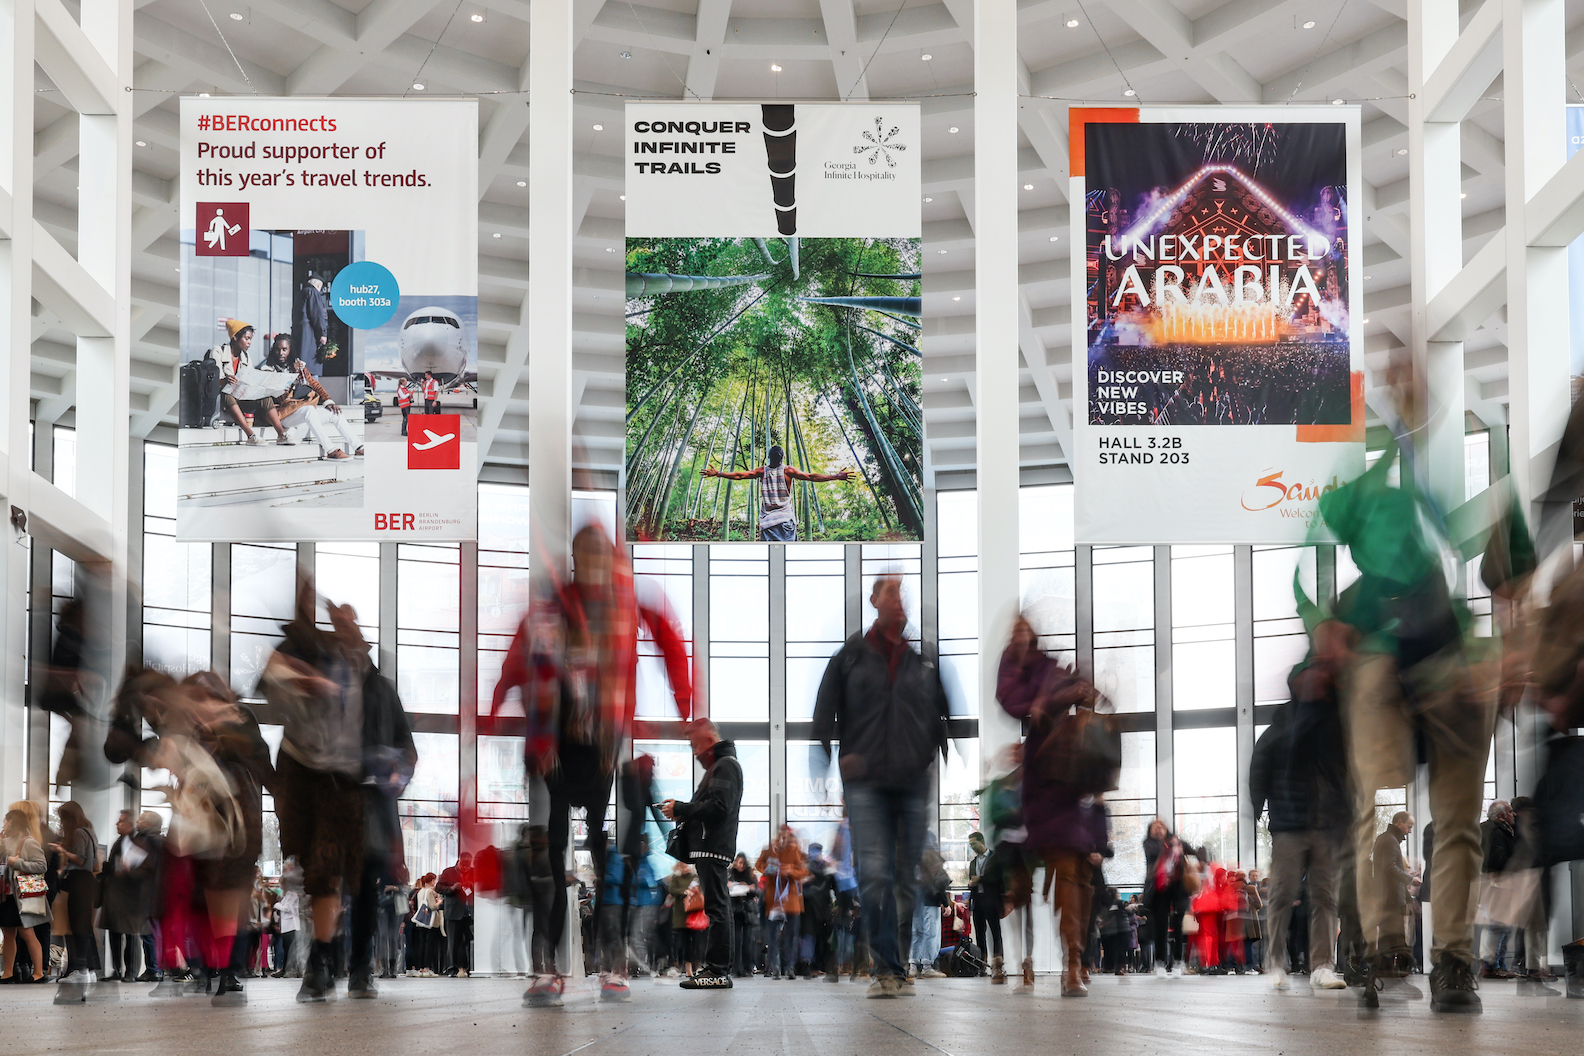 Weltweit führende Tourismusmesse ITB Berlin zieht erfolgreiche Bilanz